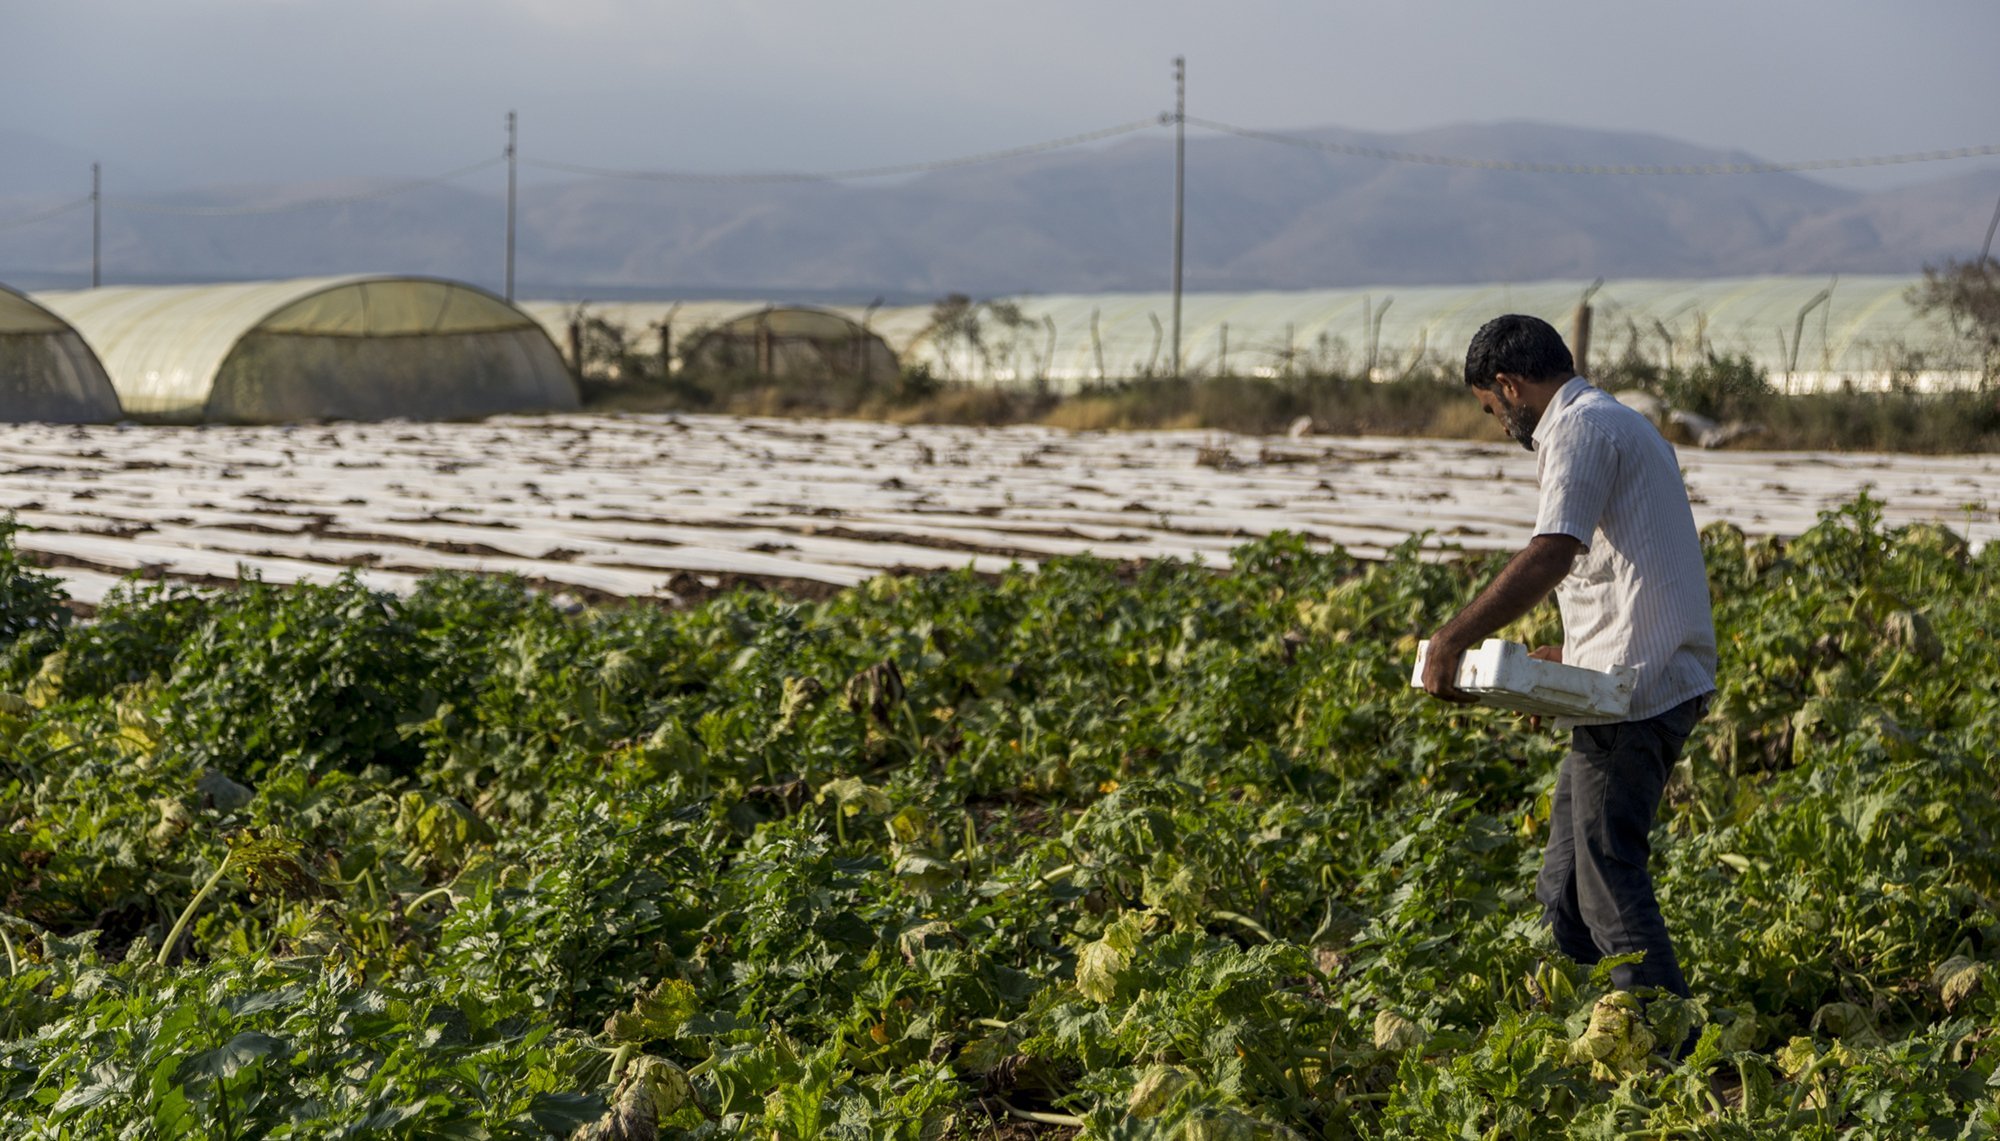 الأردن تخفض رسوم تصاريح العمل لعمال الزراعة والمخابز الوافدين بنسبة 50% لمدة 3 أشهر